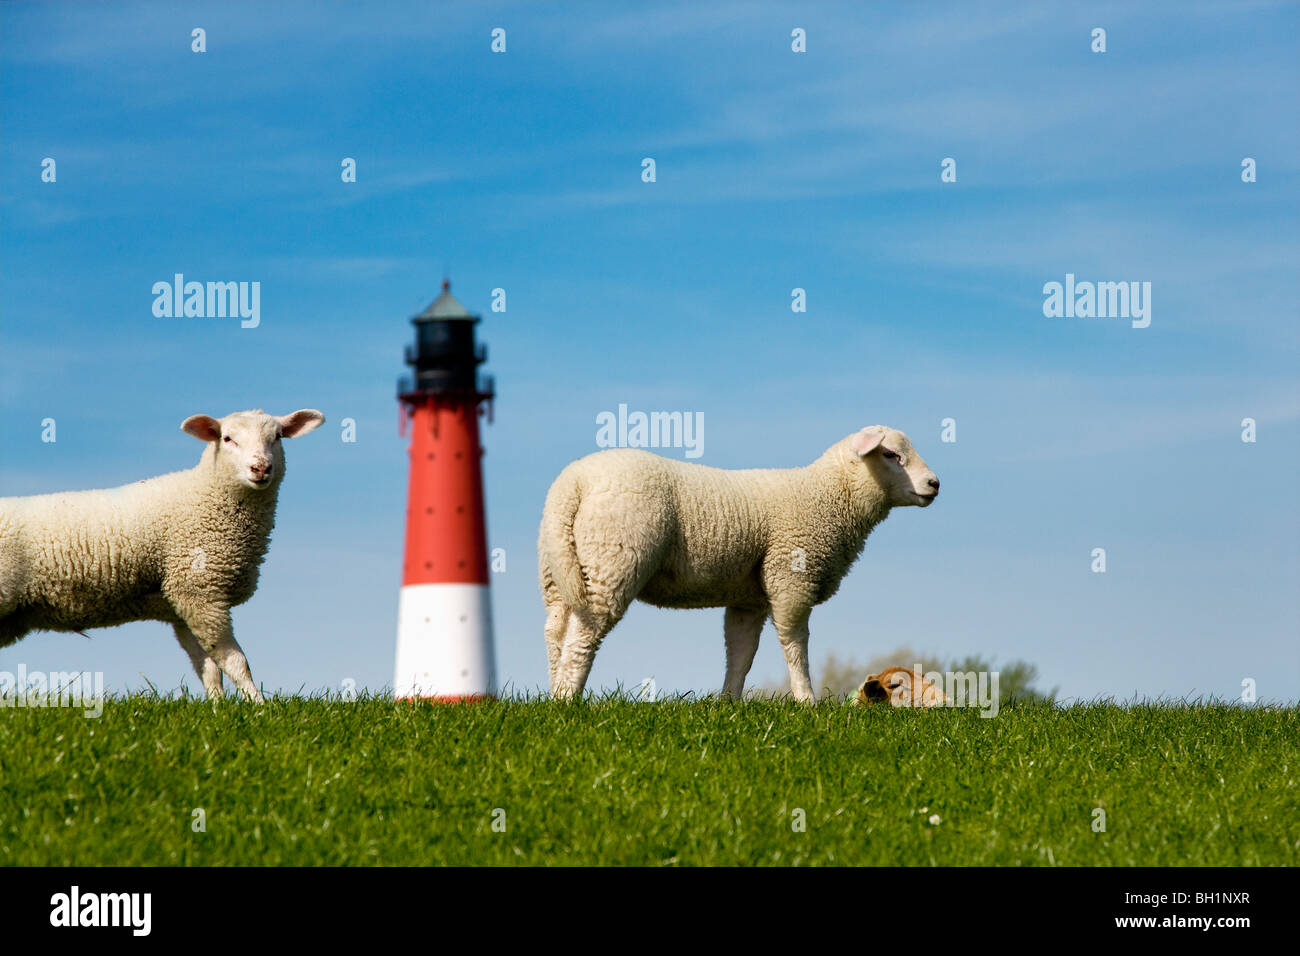 Les moutons et le phare, l'île de Pellworm, au nord de l'archipel Frison, Schleswig-Holstein, Allemagne Banque D'Images